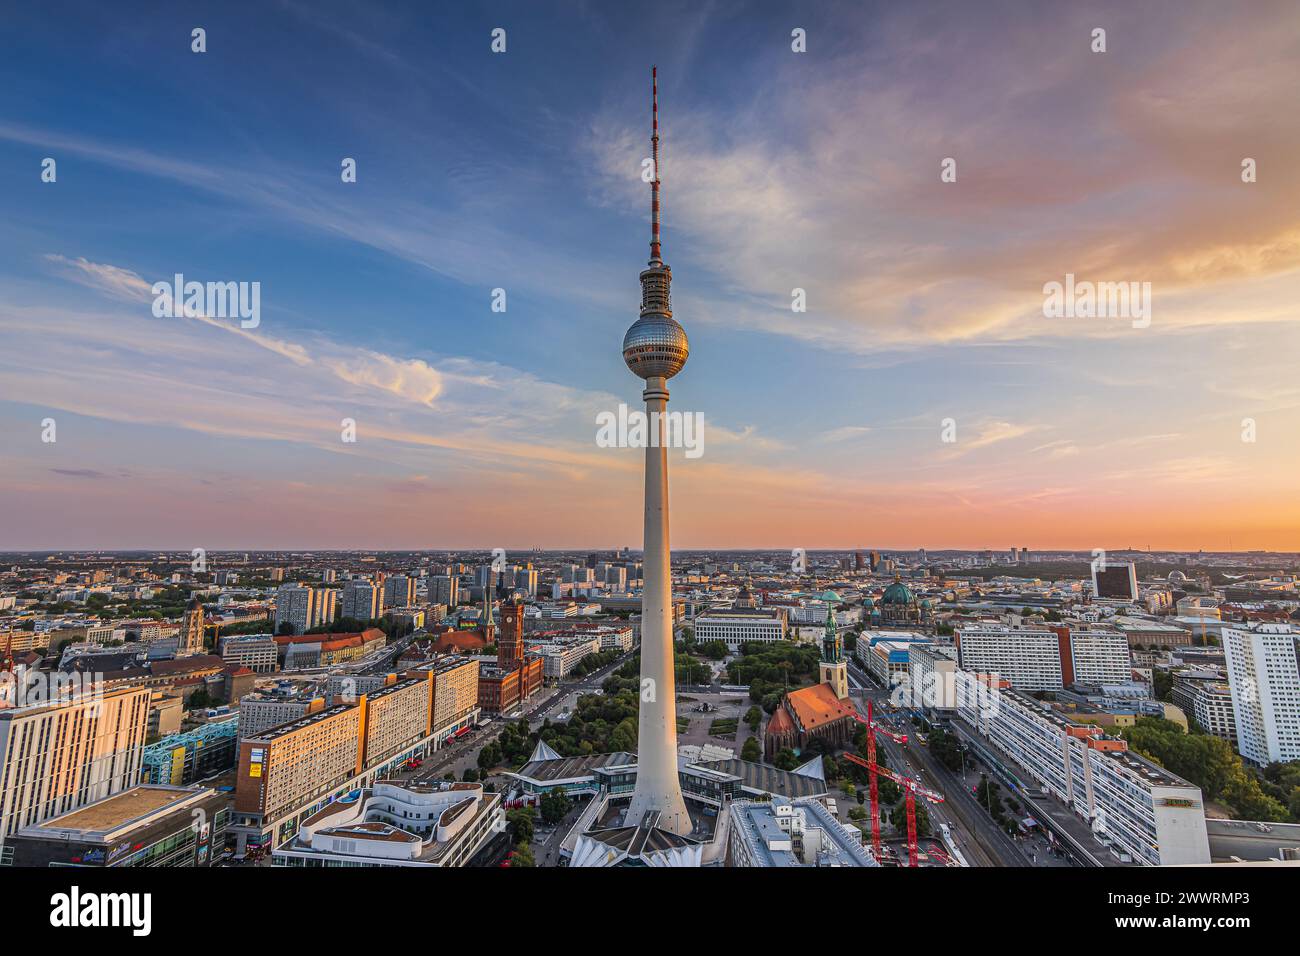 Abendliche Atmosphäre in Berlin. Skyline mit dem Fernsehturm in der Hauptstadt Deutschlands bei Sonnenuntergang. Stadtzentrum rund um den Alexanderplatz mit Gebäuden Stockfoto